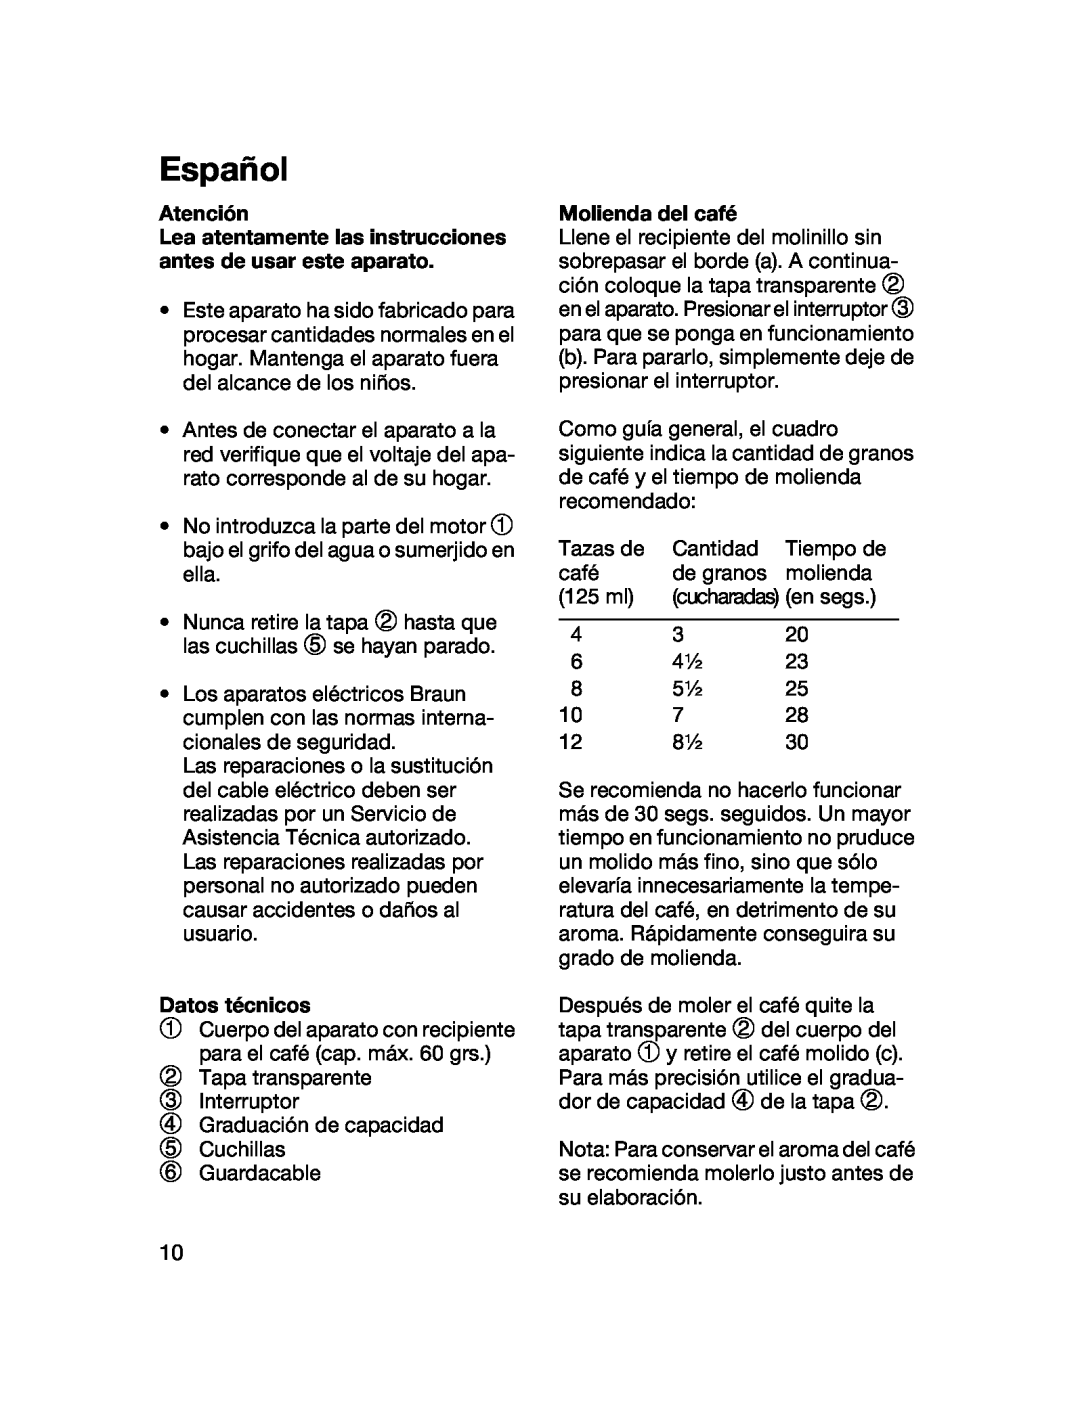 Braun 4041 manual Español, Atención, Datos técnicos, Molienda del café 